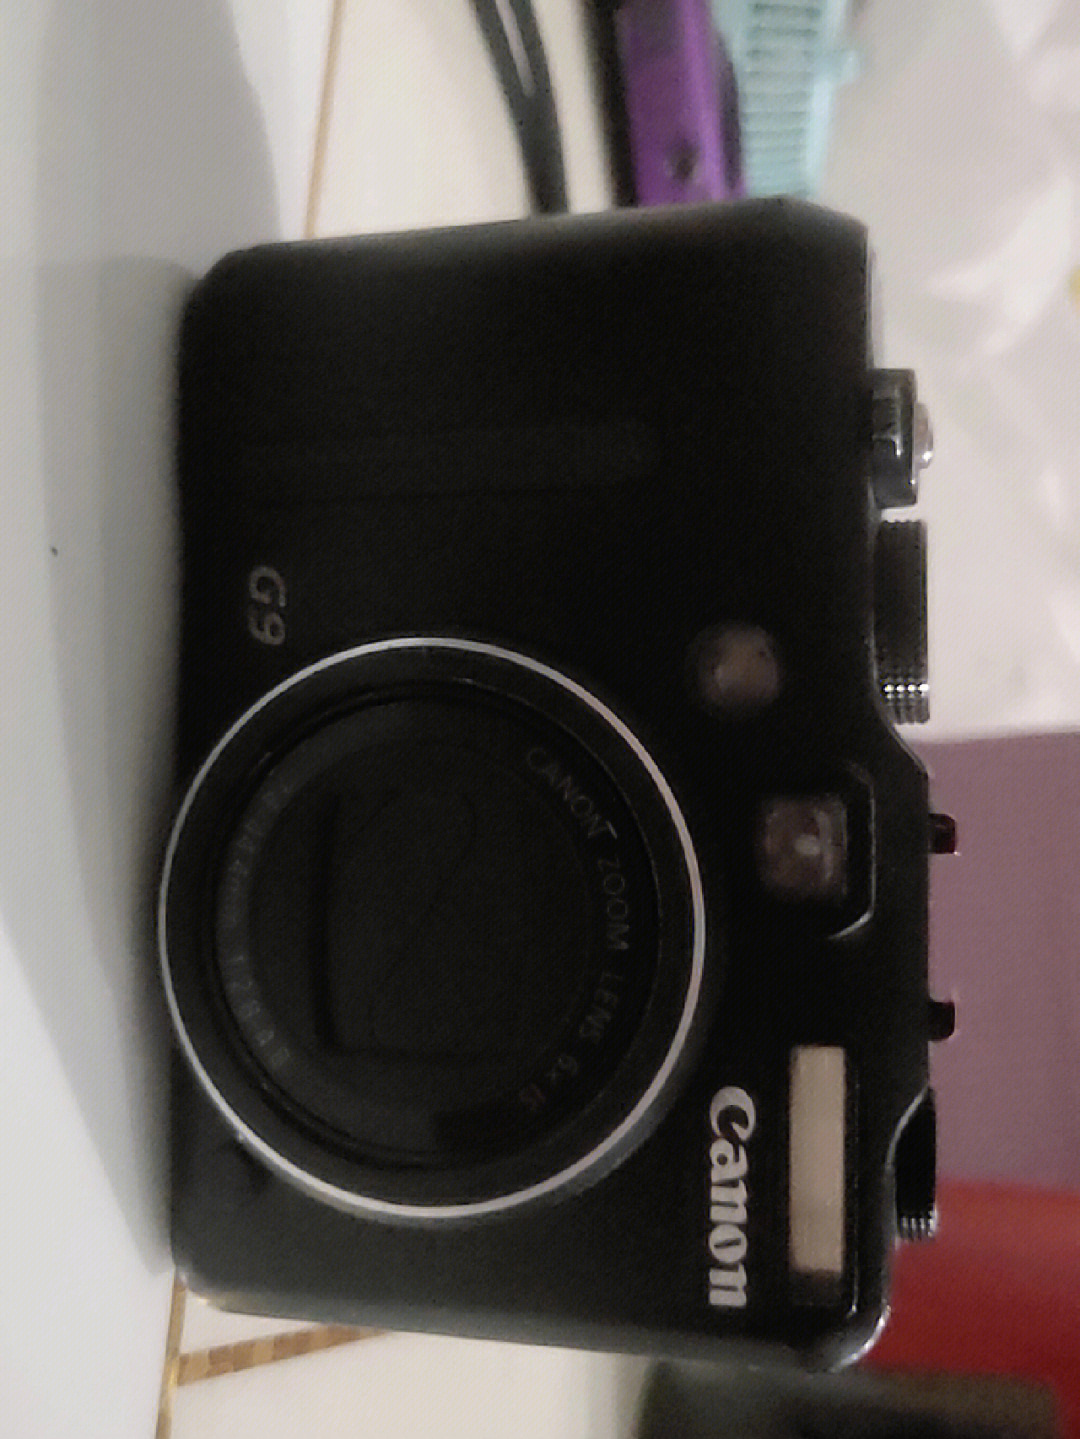 专业相机佳能g9和索尼hx30都是经典机型